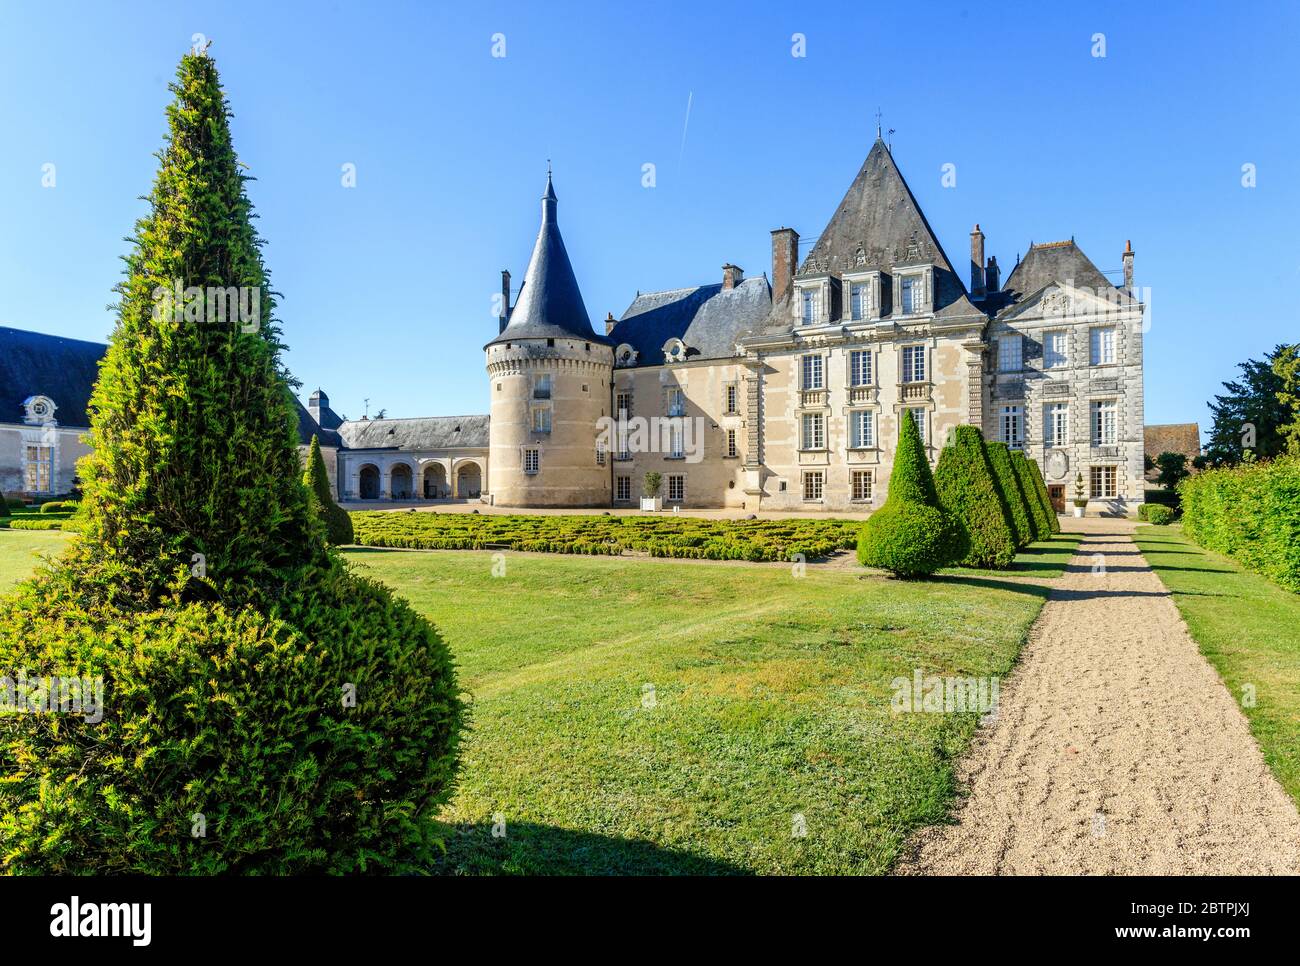 France, Indre, Brenne Regional Natural Park, Azay le Ferron, the castle, park and garden // France, Indre (36), Parc naturel régional de la Brenne, Az Stock Photo